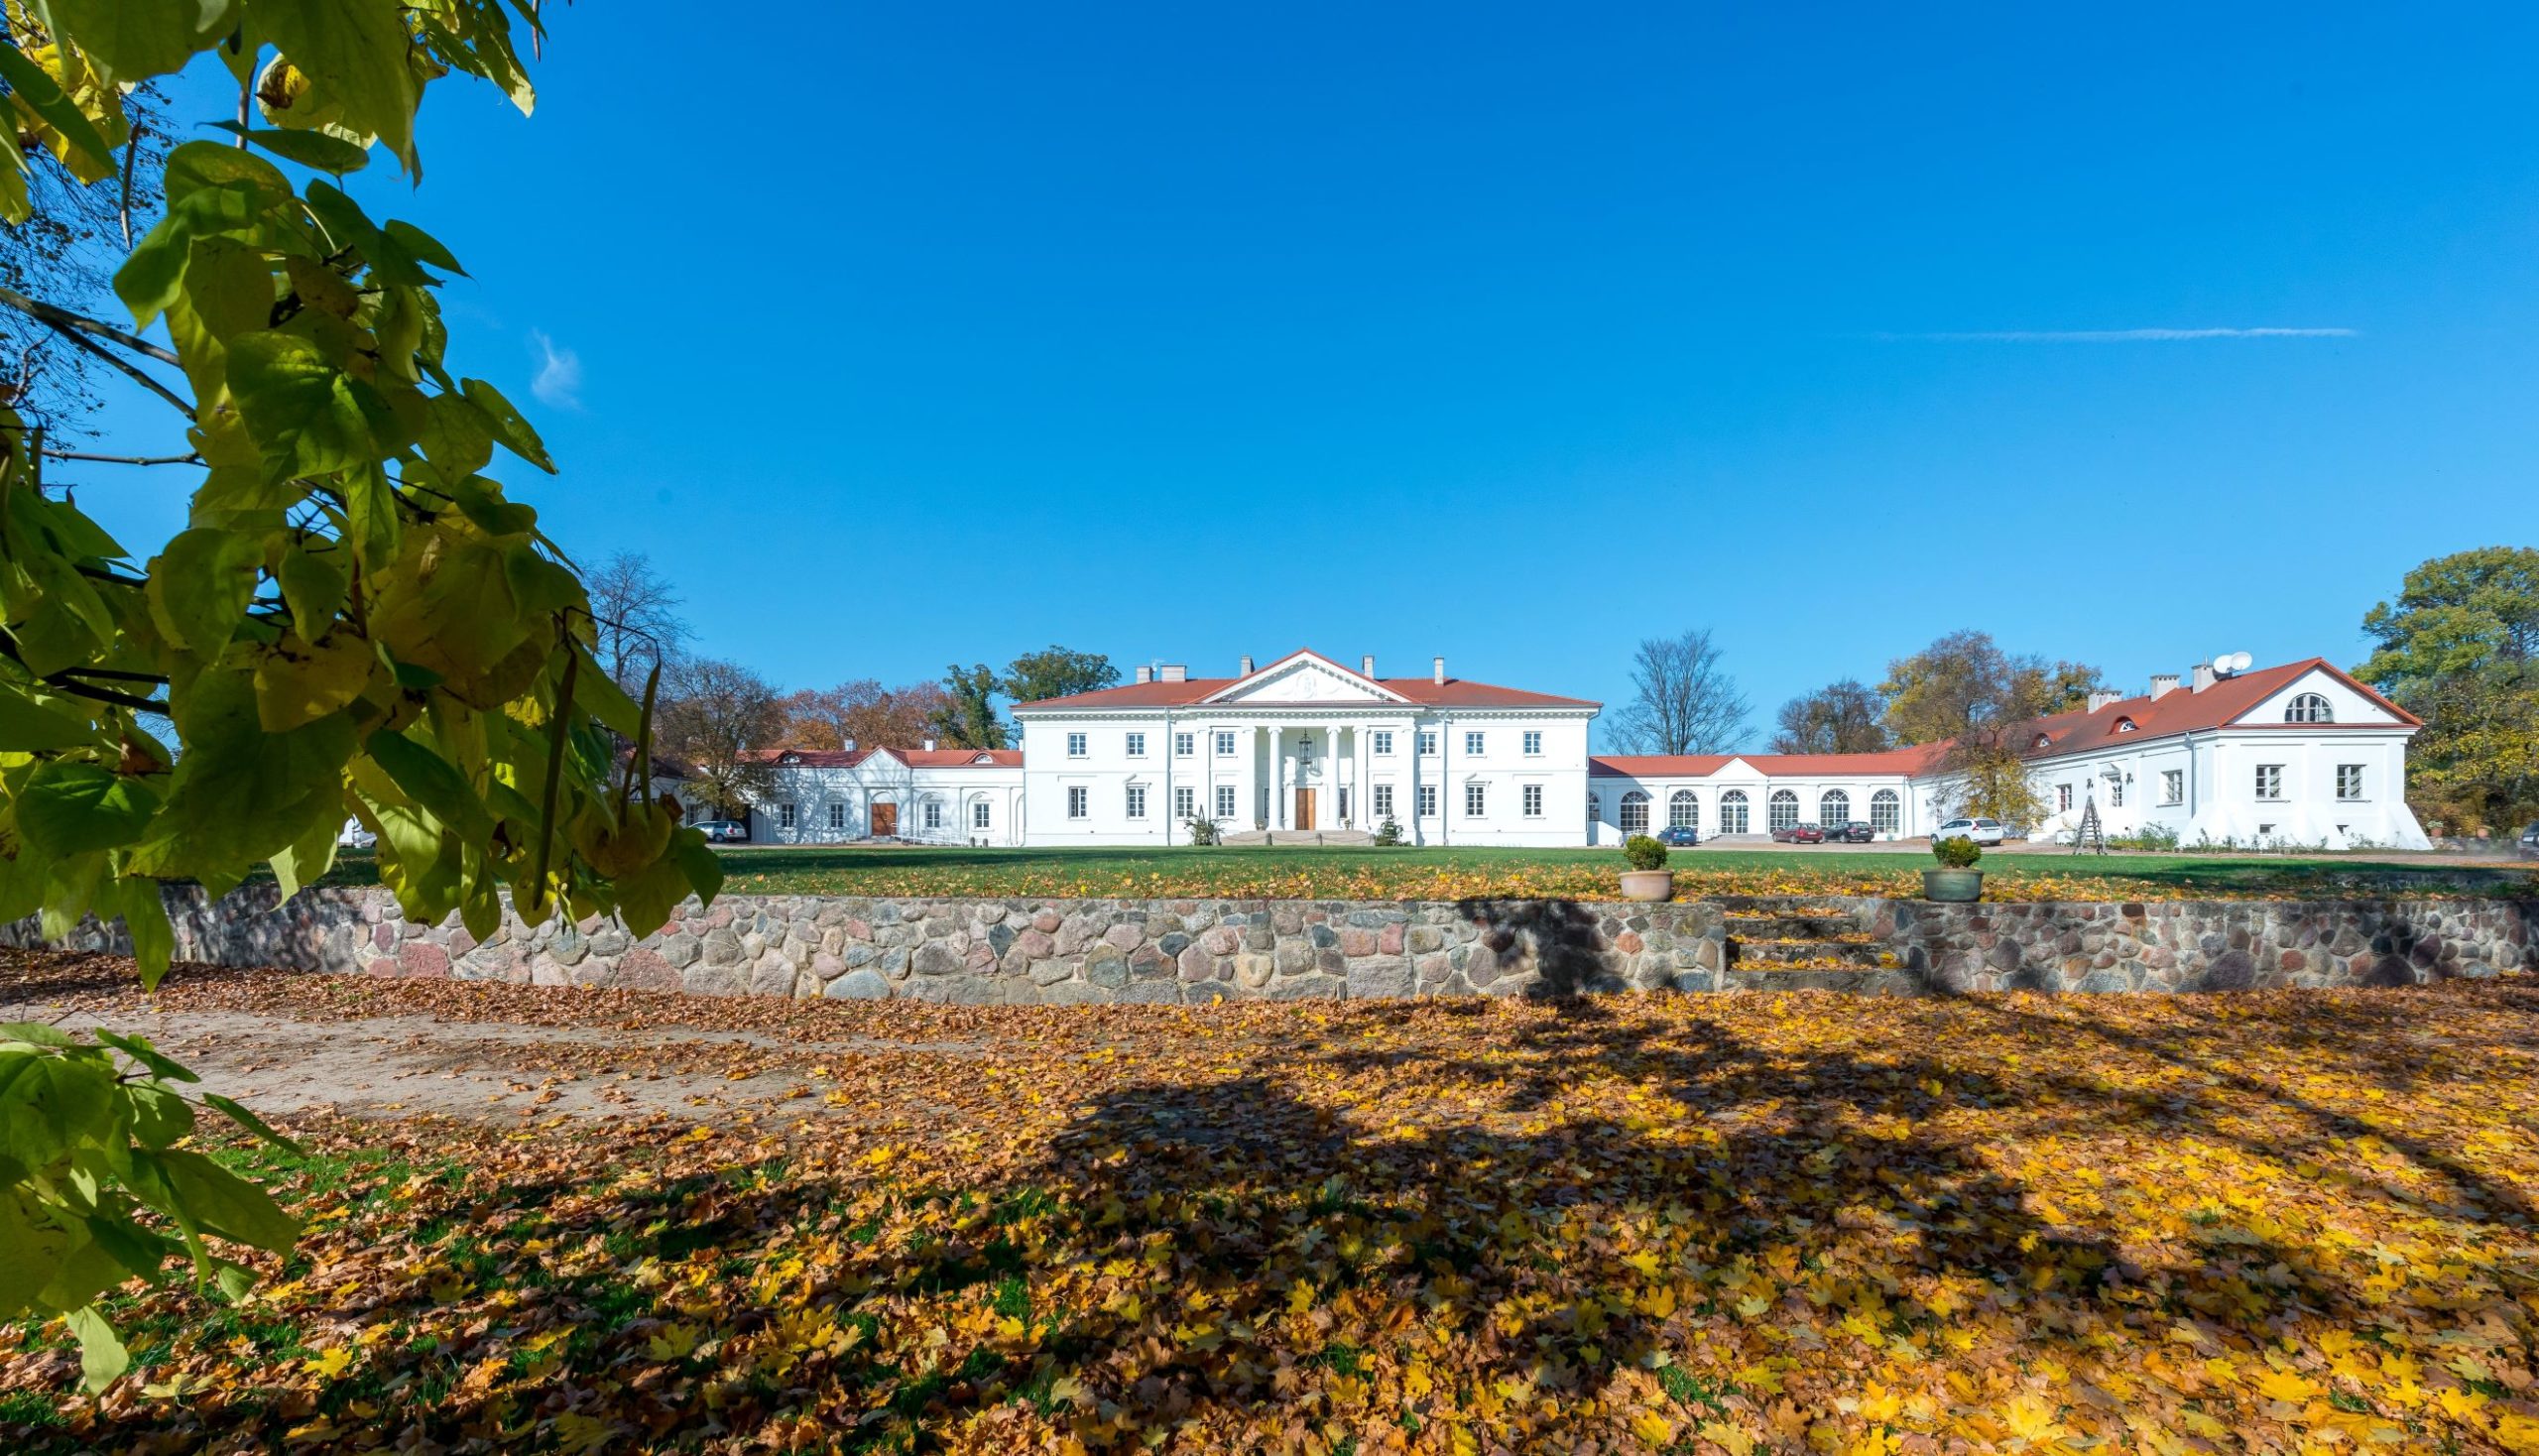 Odnowiony barokowy Pałac w Korczewie nad Bugiem, zwany „Perłą Podlasia” – beneficjent: Fundacja „Pałac w Korczewie” (zdjęcie nr 2, autor: Krzysztof Chojnacki)